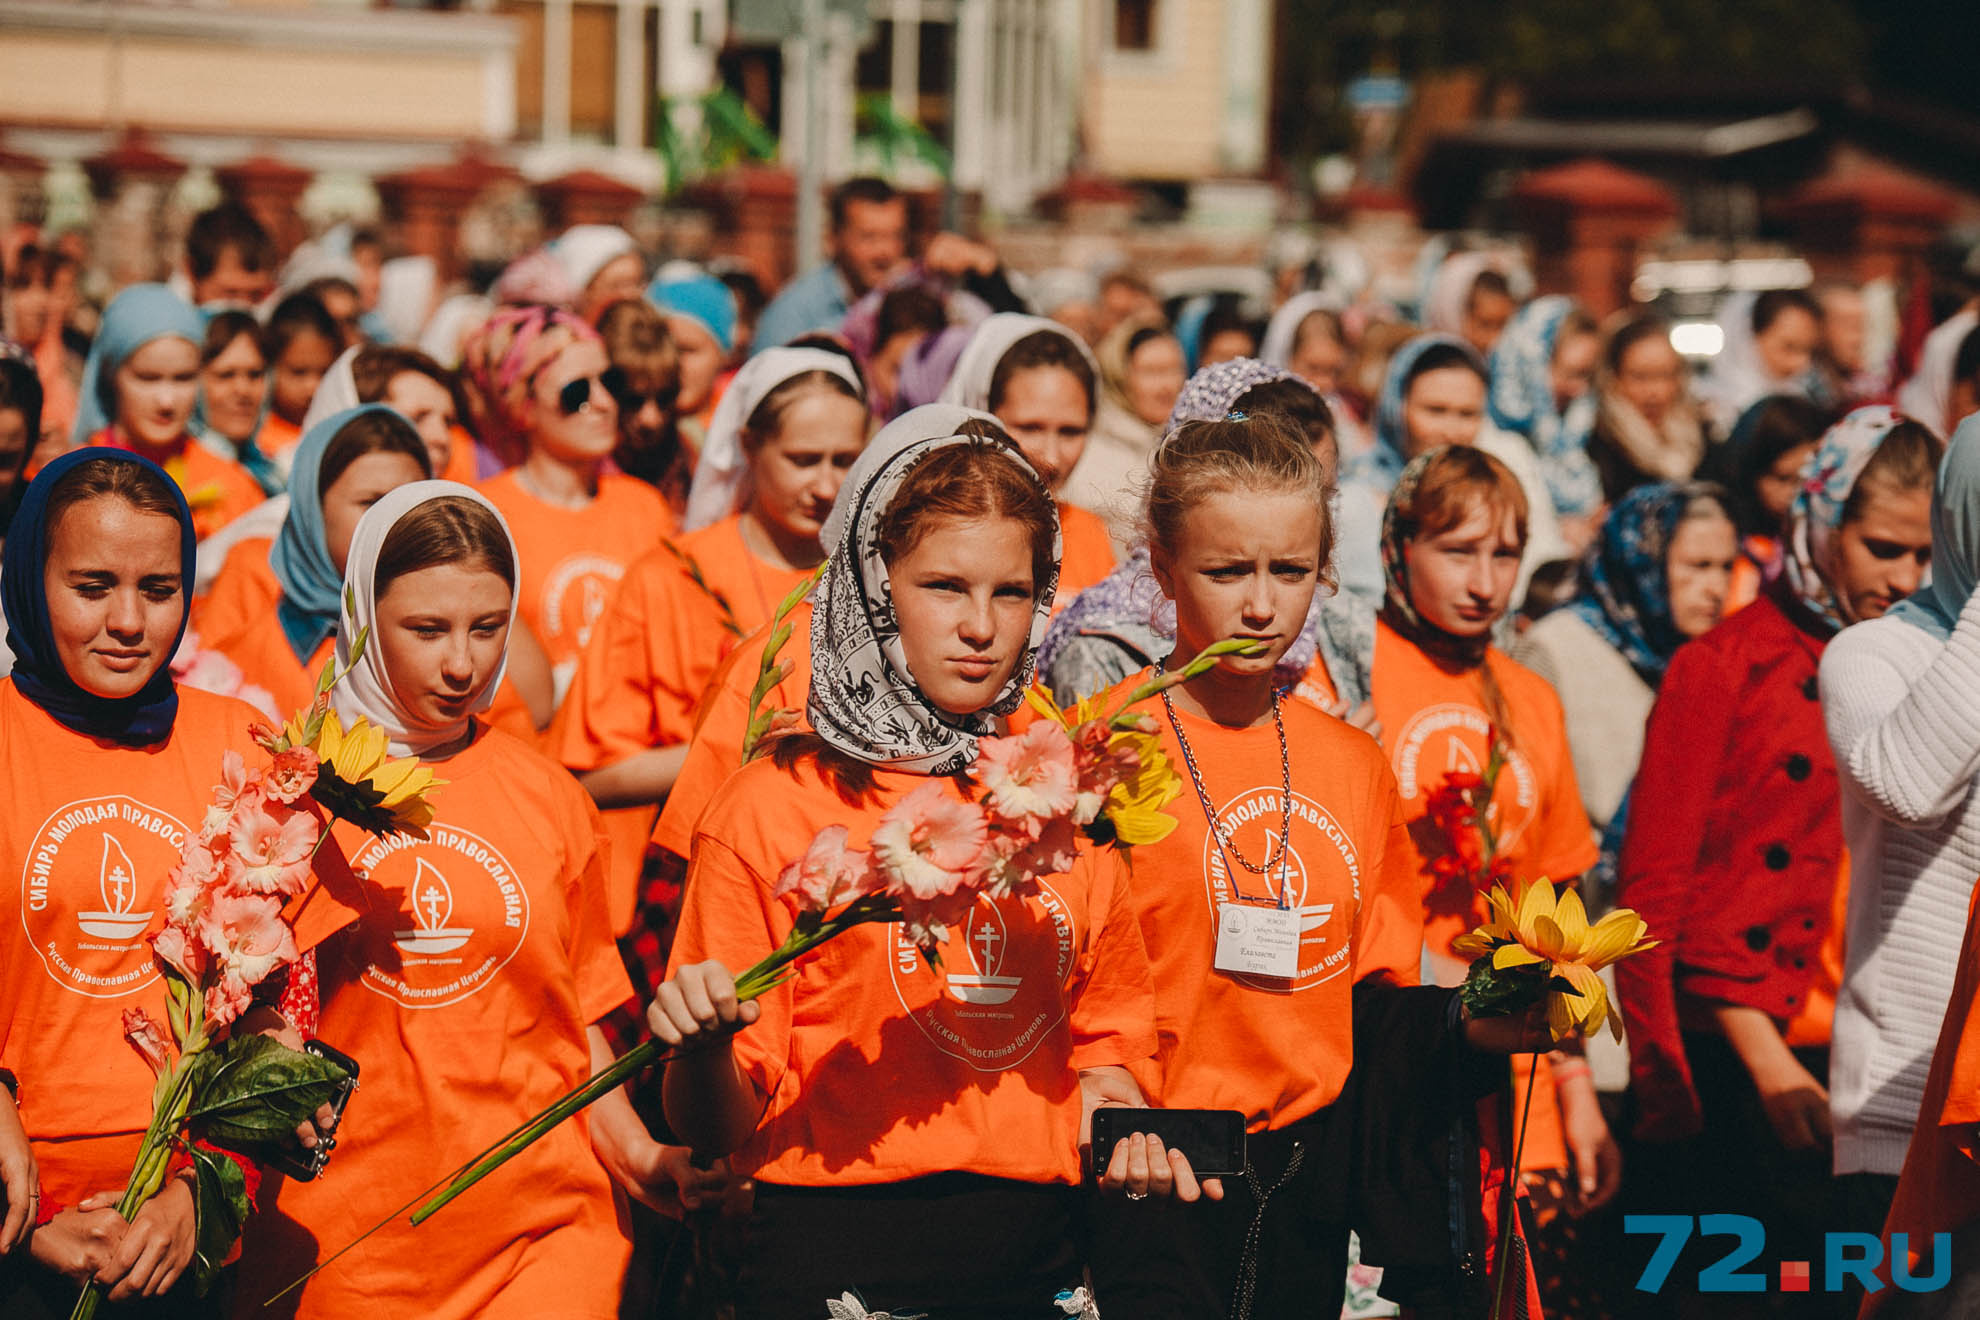 Участницы общественного движения "Сибирь Молодая Православная" в руках несли первые летние гладиолусы